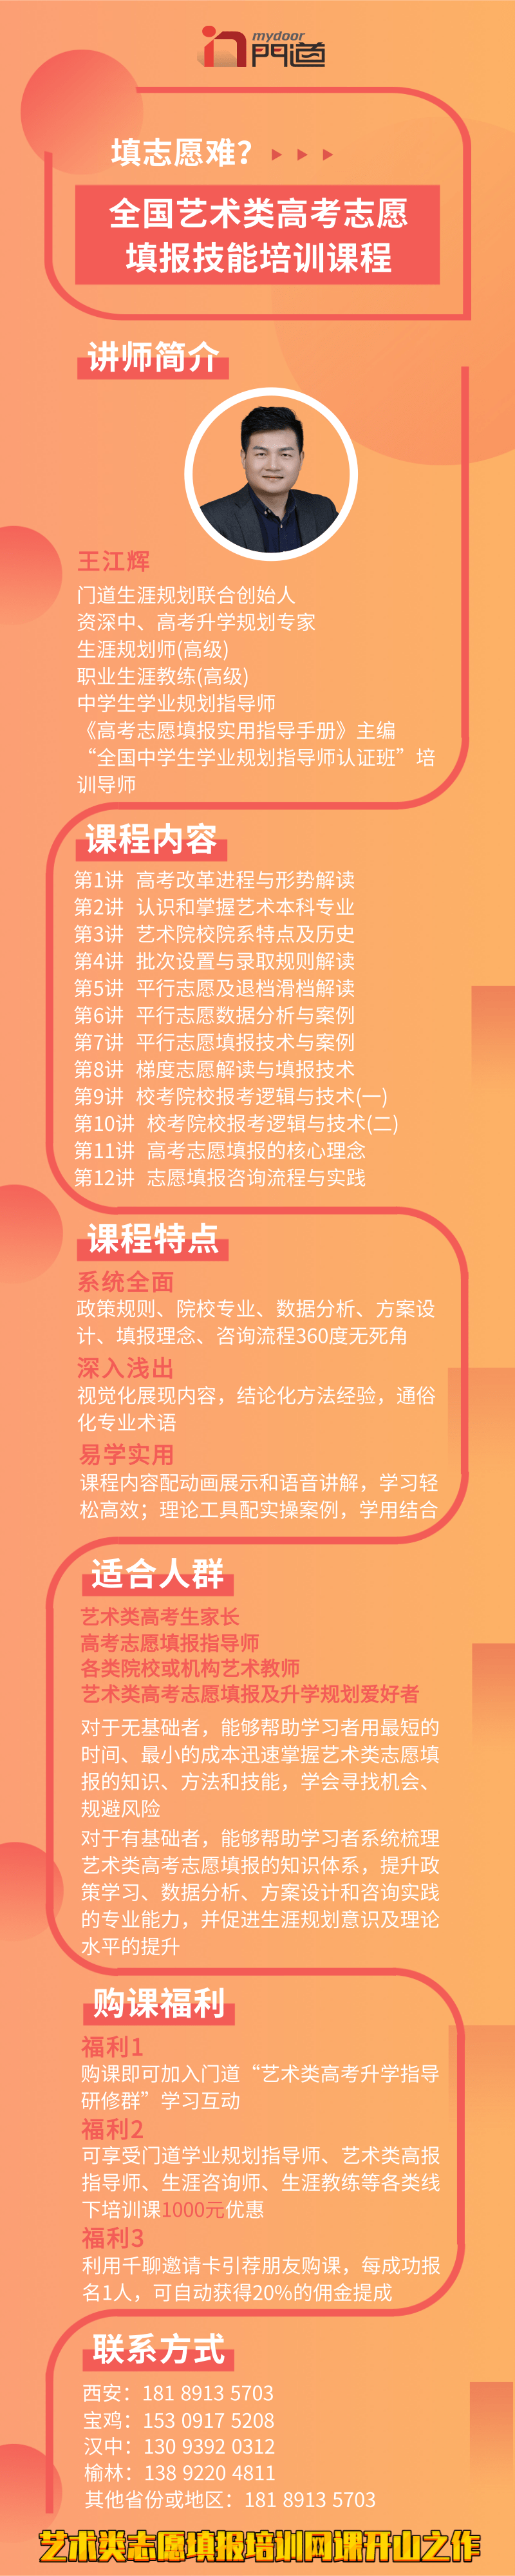 [副本][副本]橙色渐变风网络线上直播课程营销长图@凡科快图.png